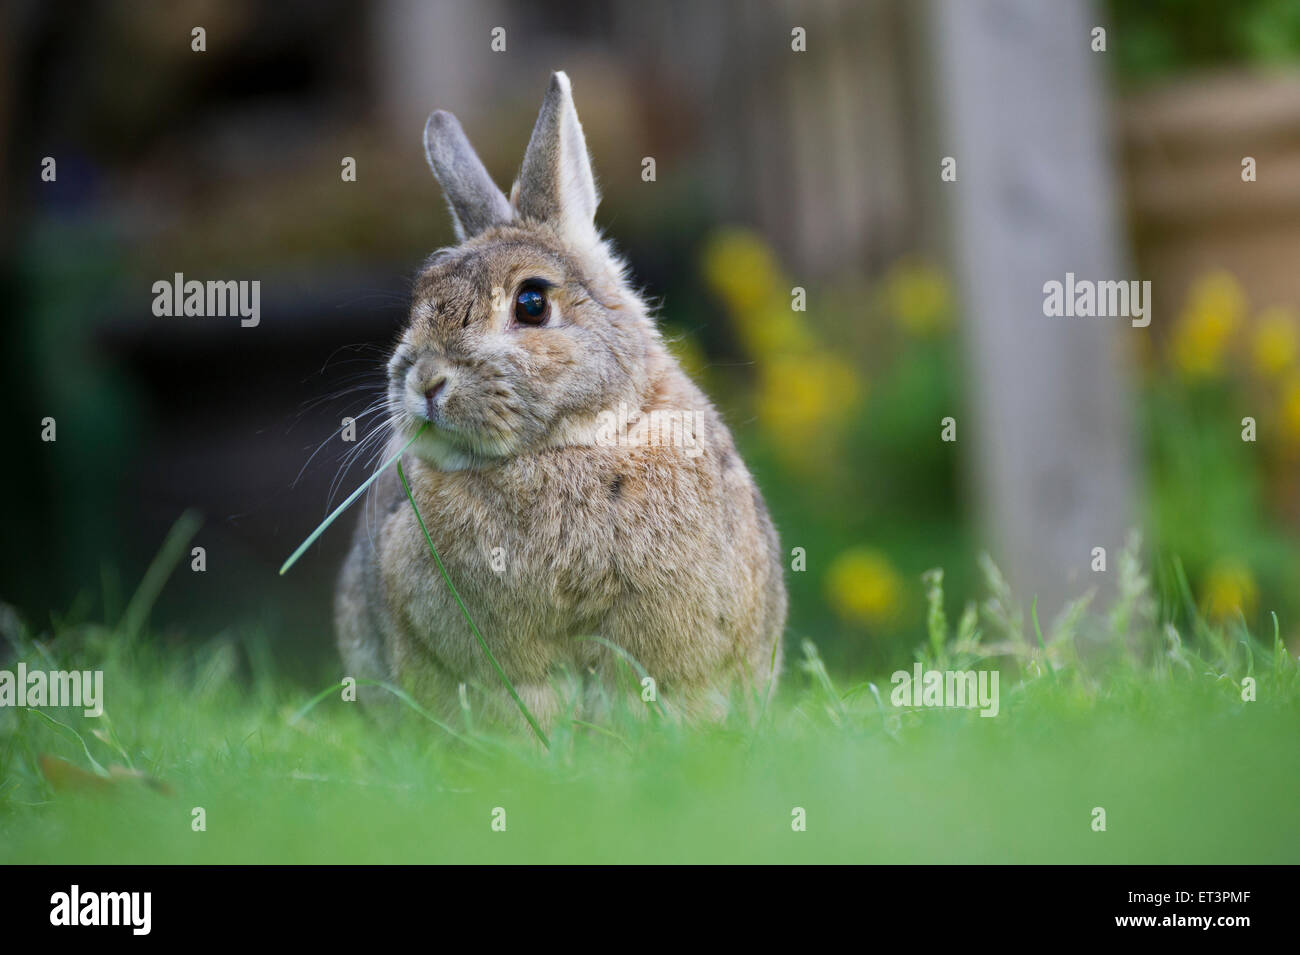 A pet rabbit in a garden. Stock Photo